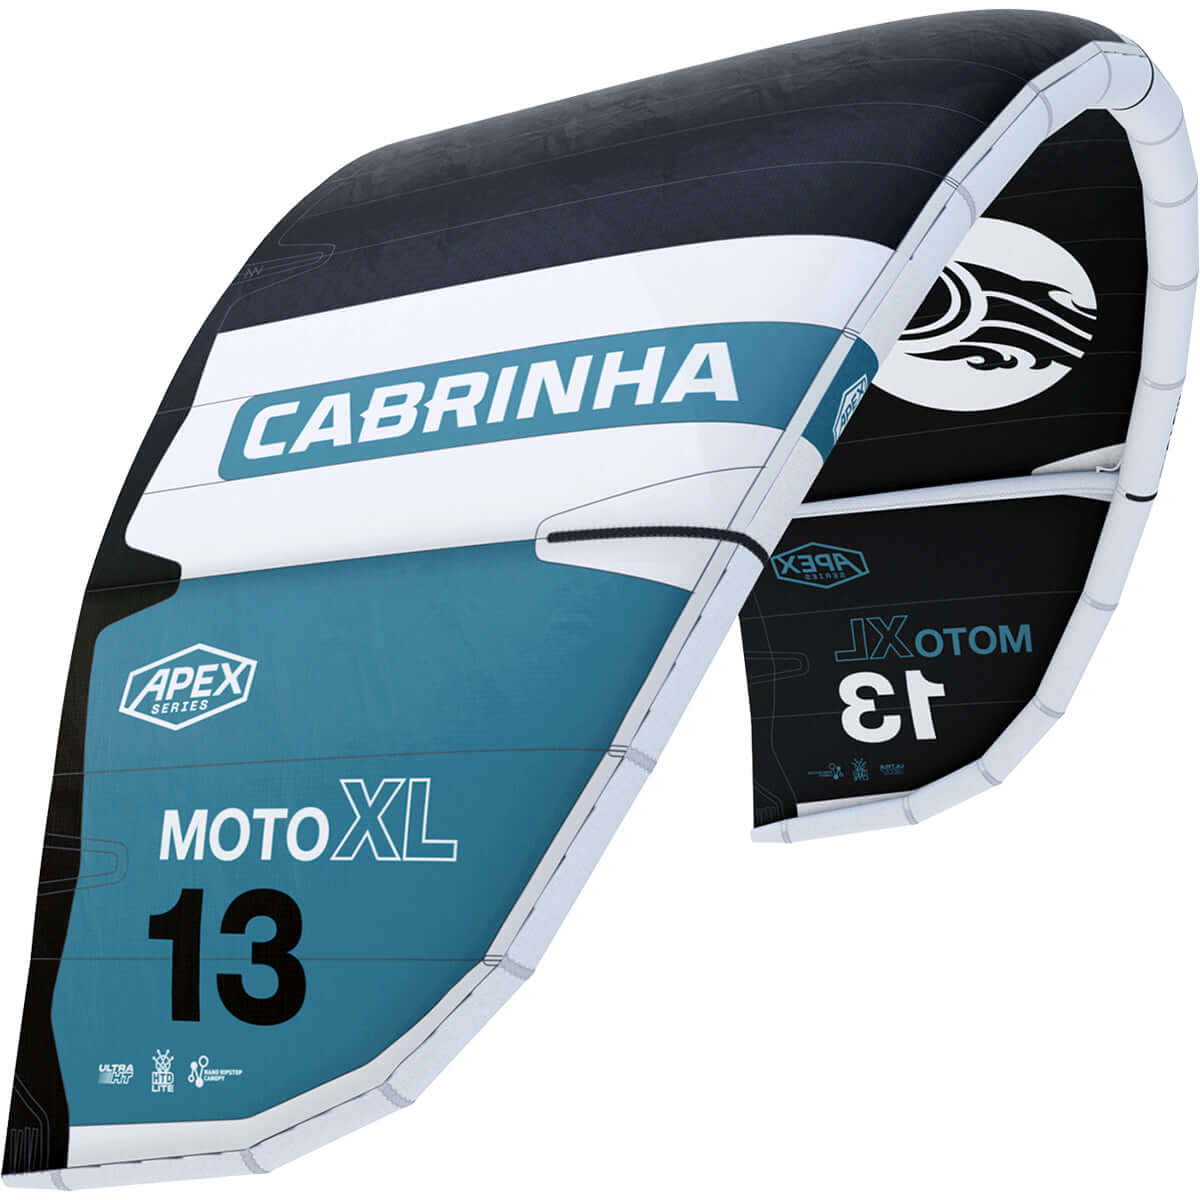 Cabrinha 24 Moto_XL Apex only – Kite